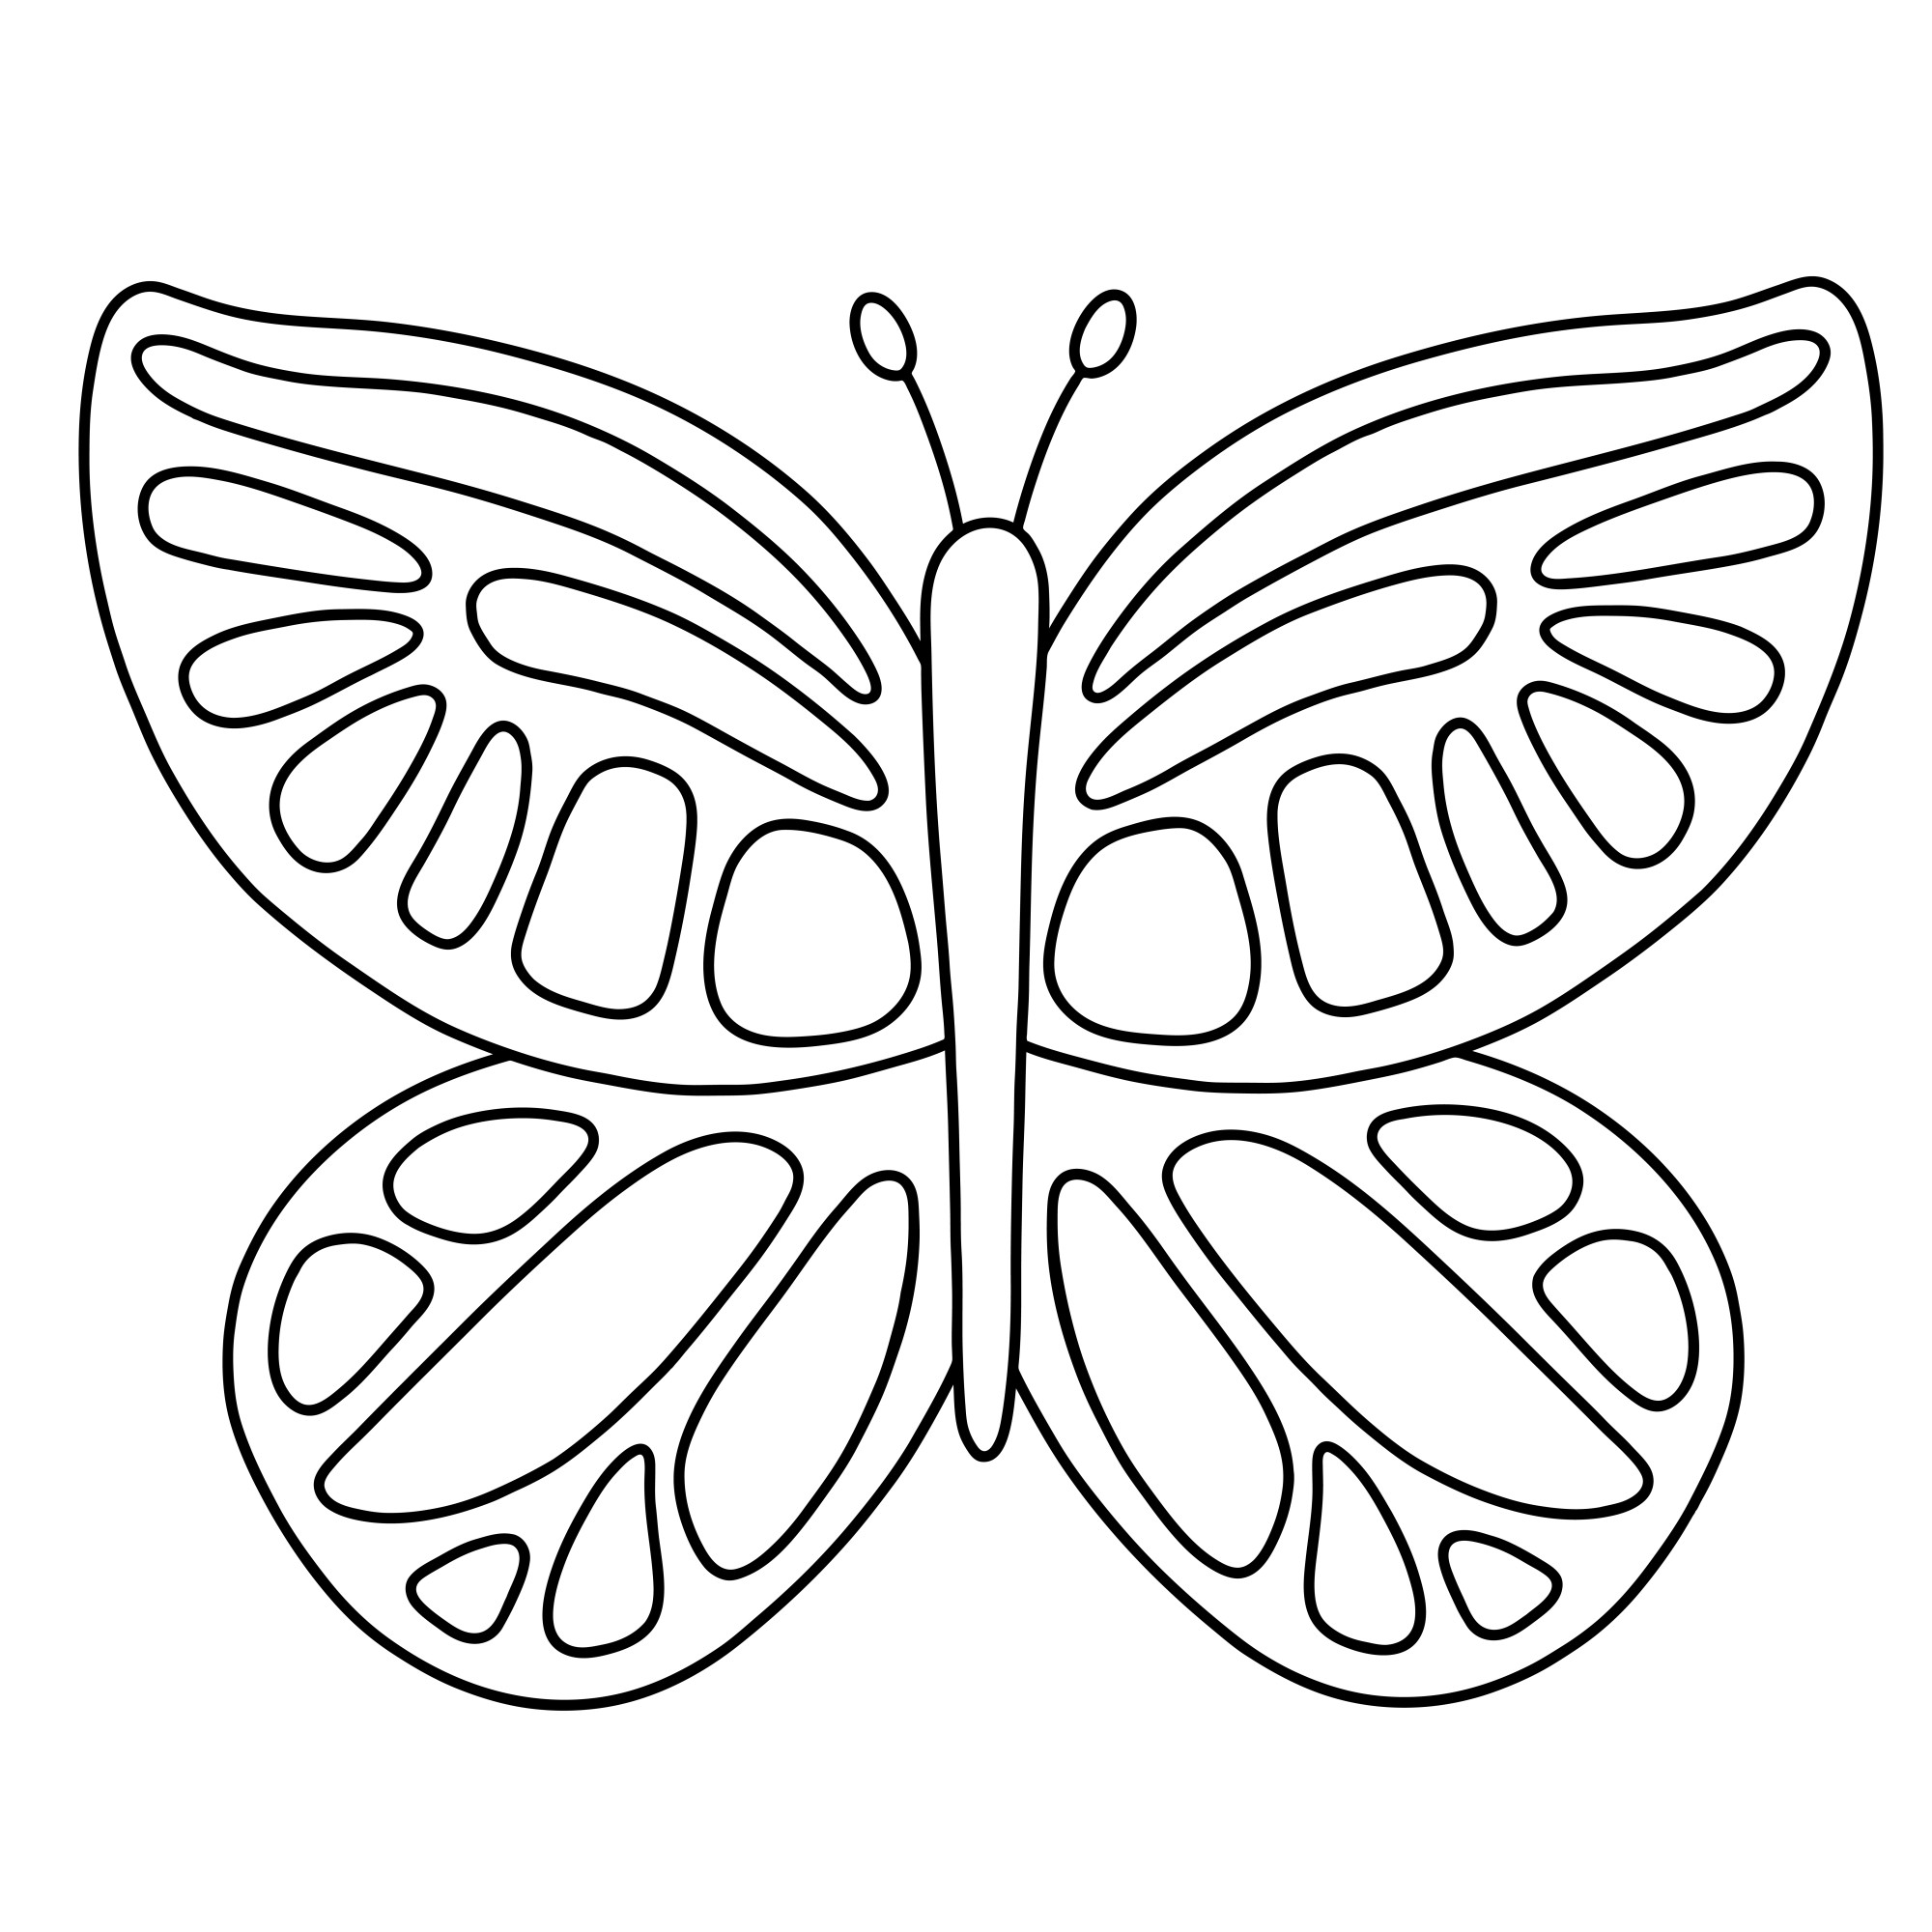 Раскраска для детей: большая красивая бабочка